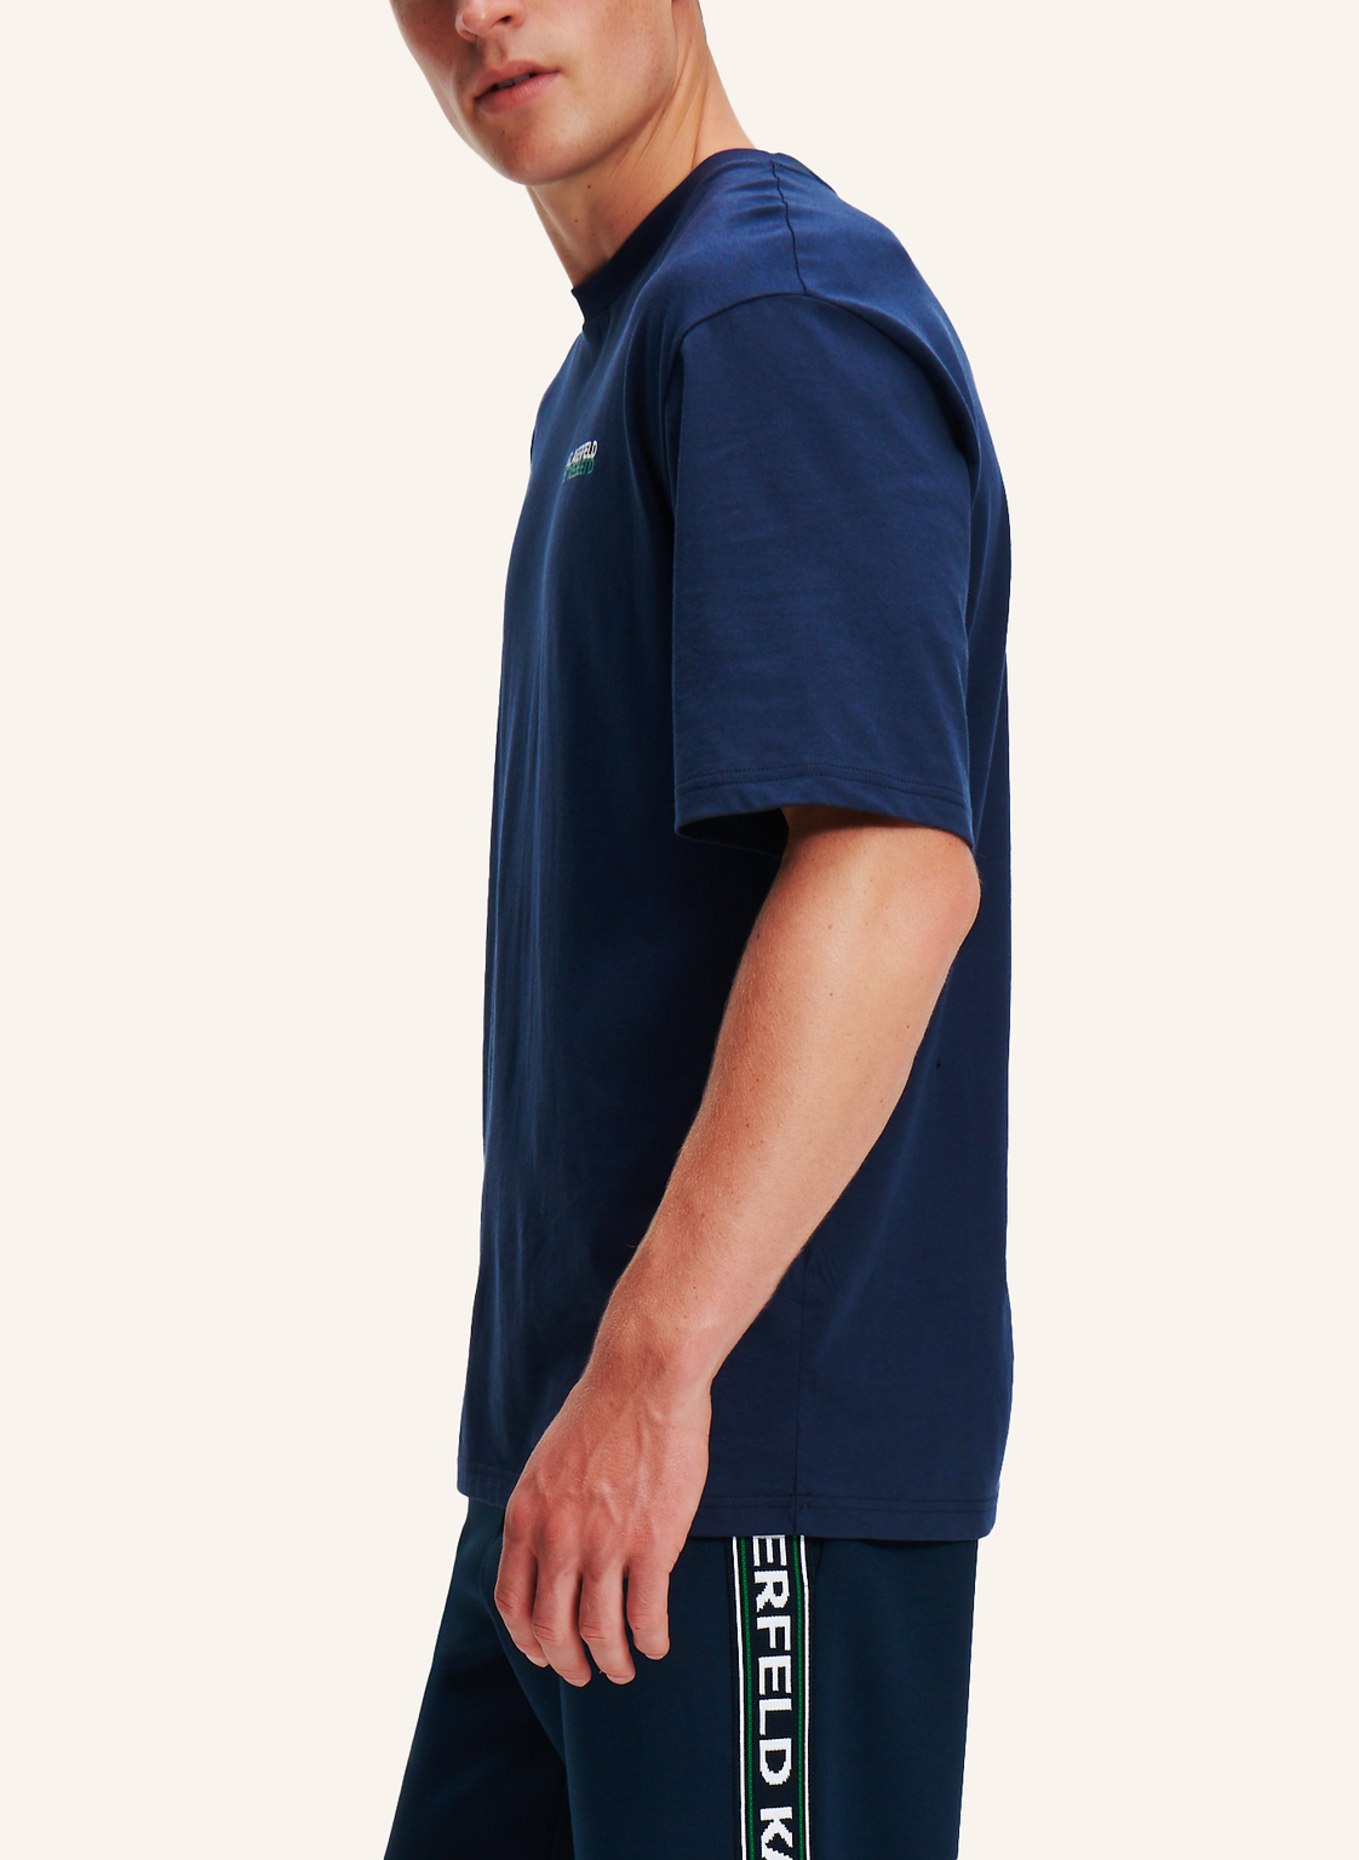 KARL LAGERFELD T-shirt, Farbe: SCHWARZ (Bild 3)